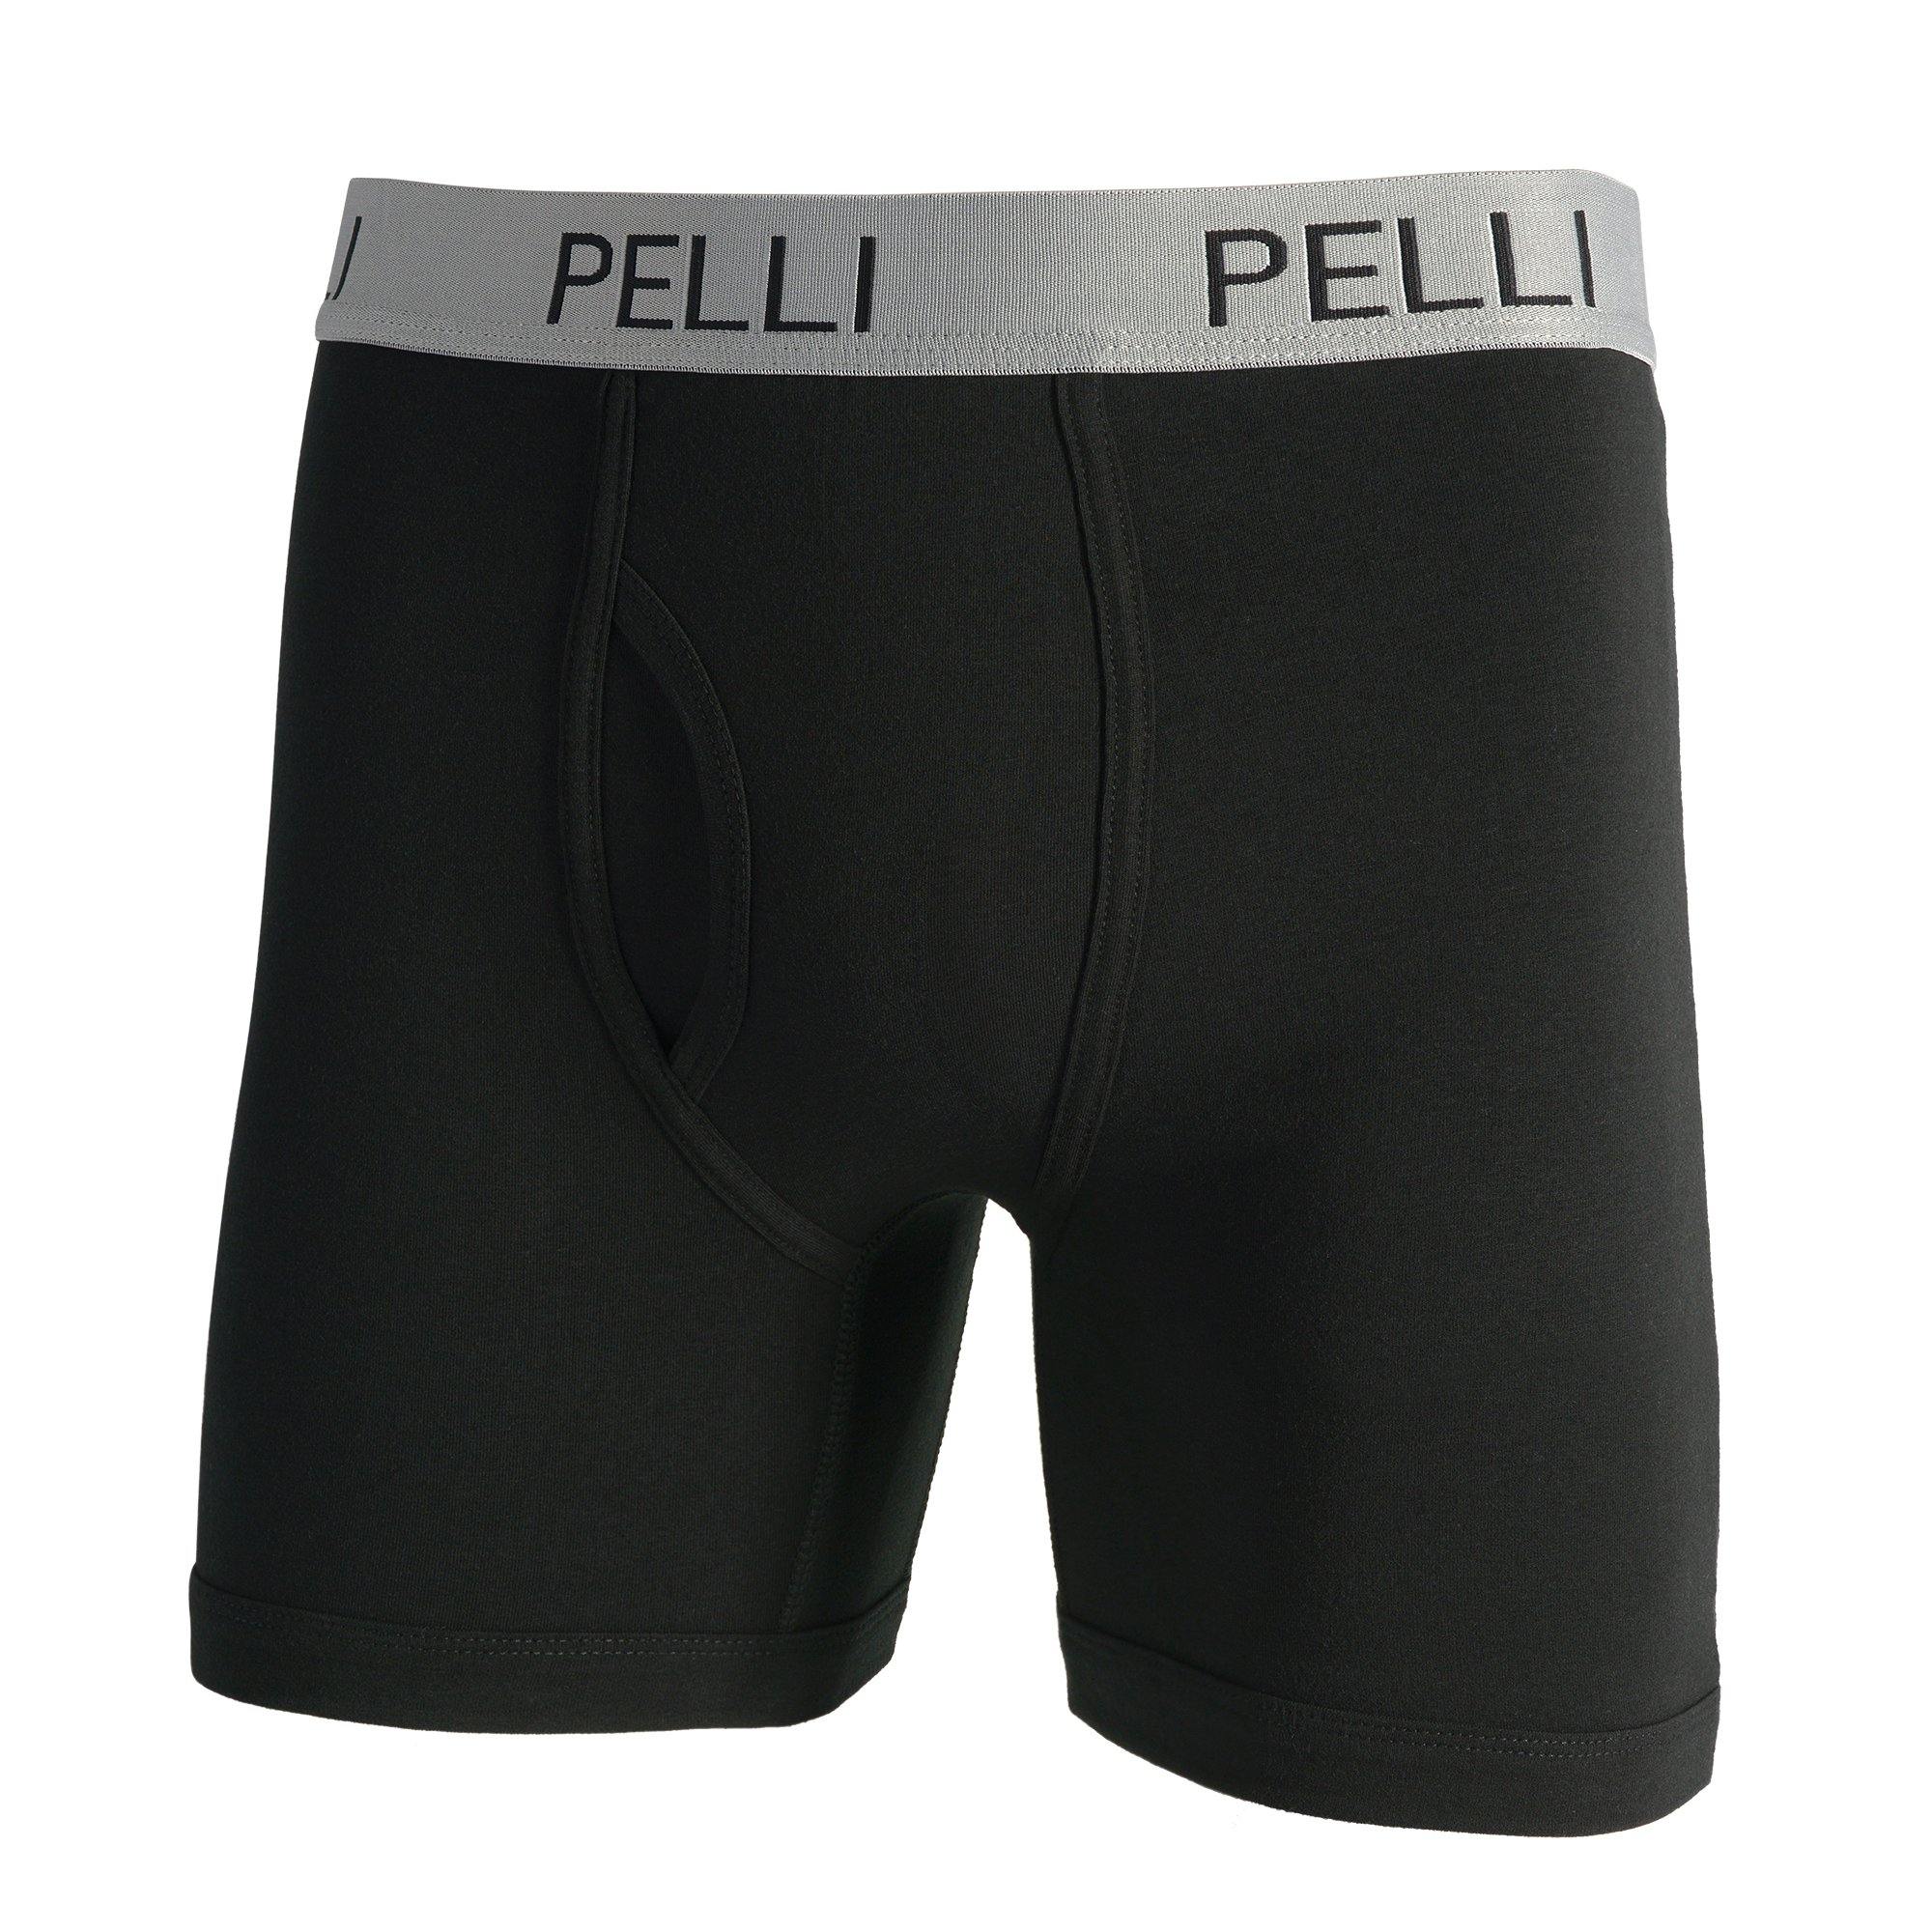 Tapout Boxer Briefs Solid Cotton Spandex Underpants (Men's) 6 Pack 